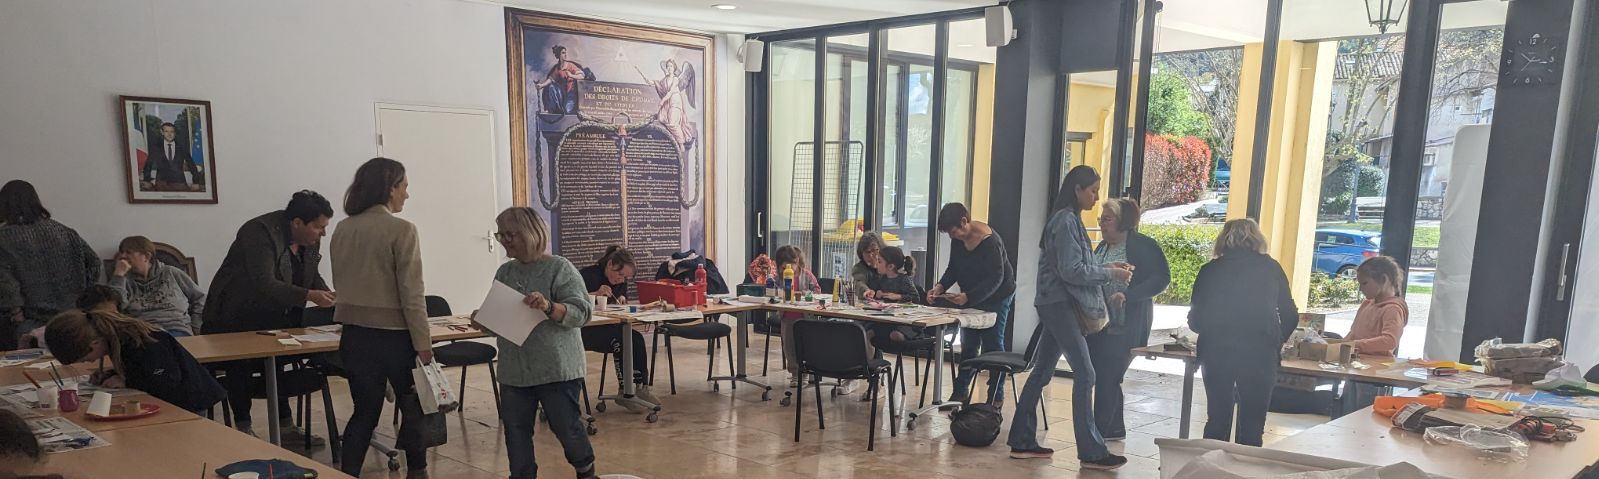 Atelier de Pâques des enfants organisé par la Municipalité